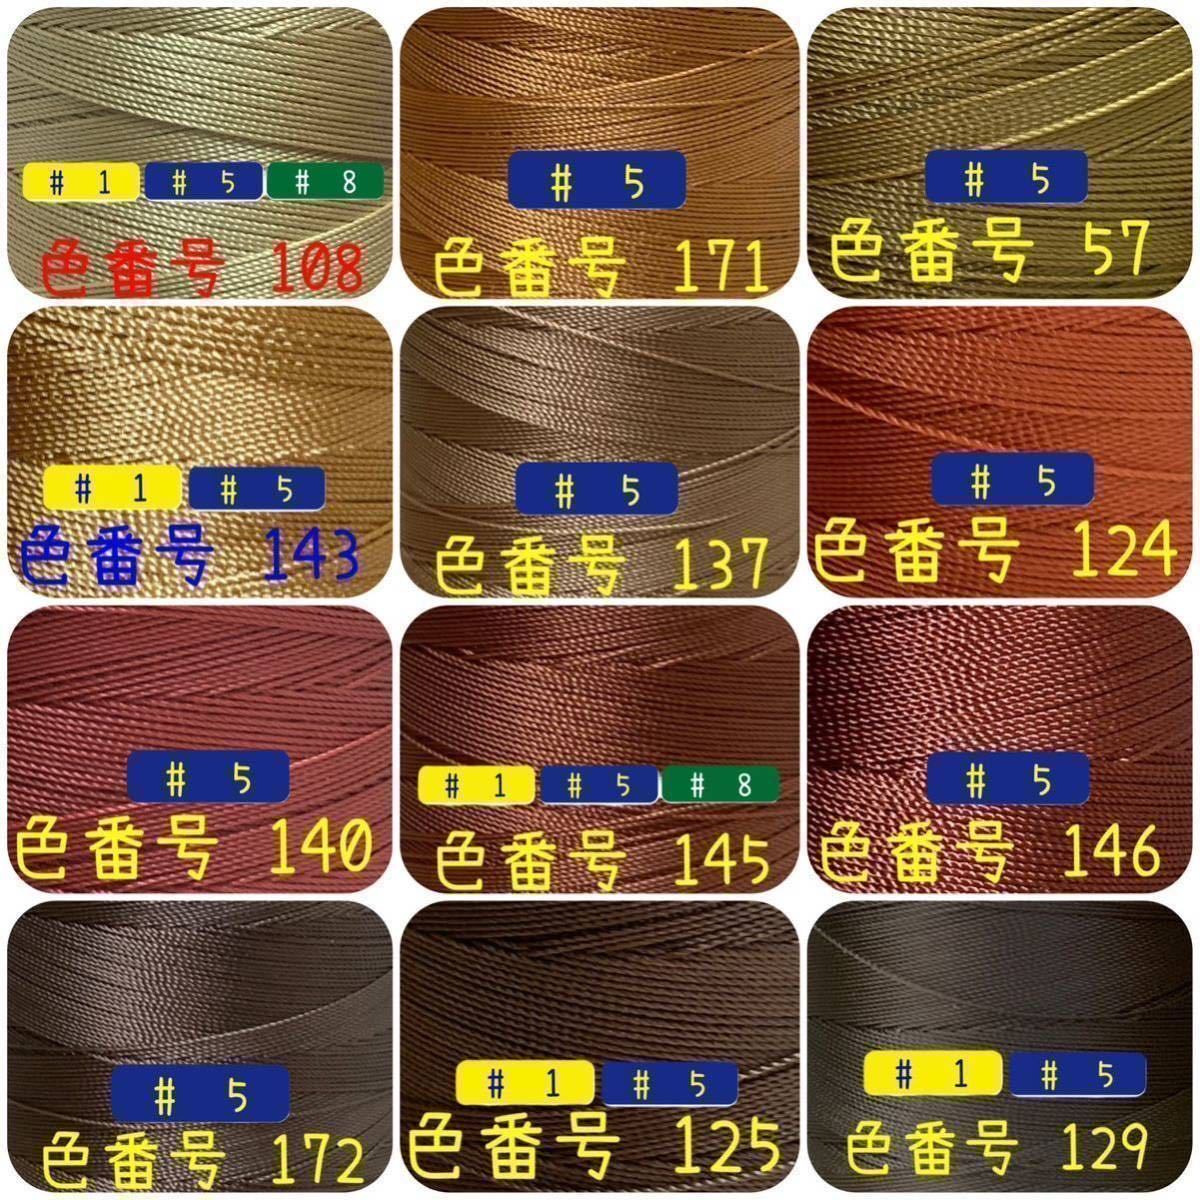 【8点匿名配送】ビニモMBT #1 #5 #8 レザークラフト手縫い糸_画像3